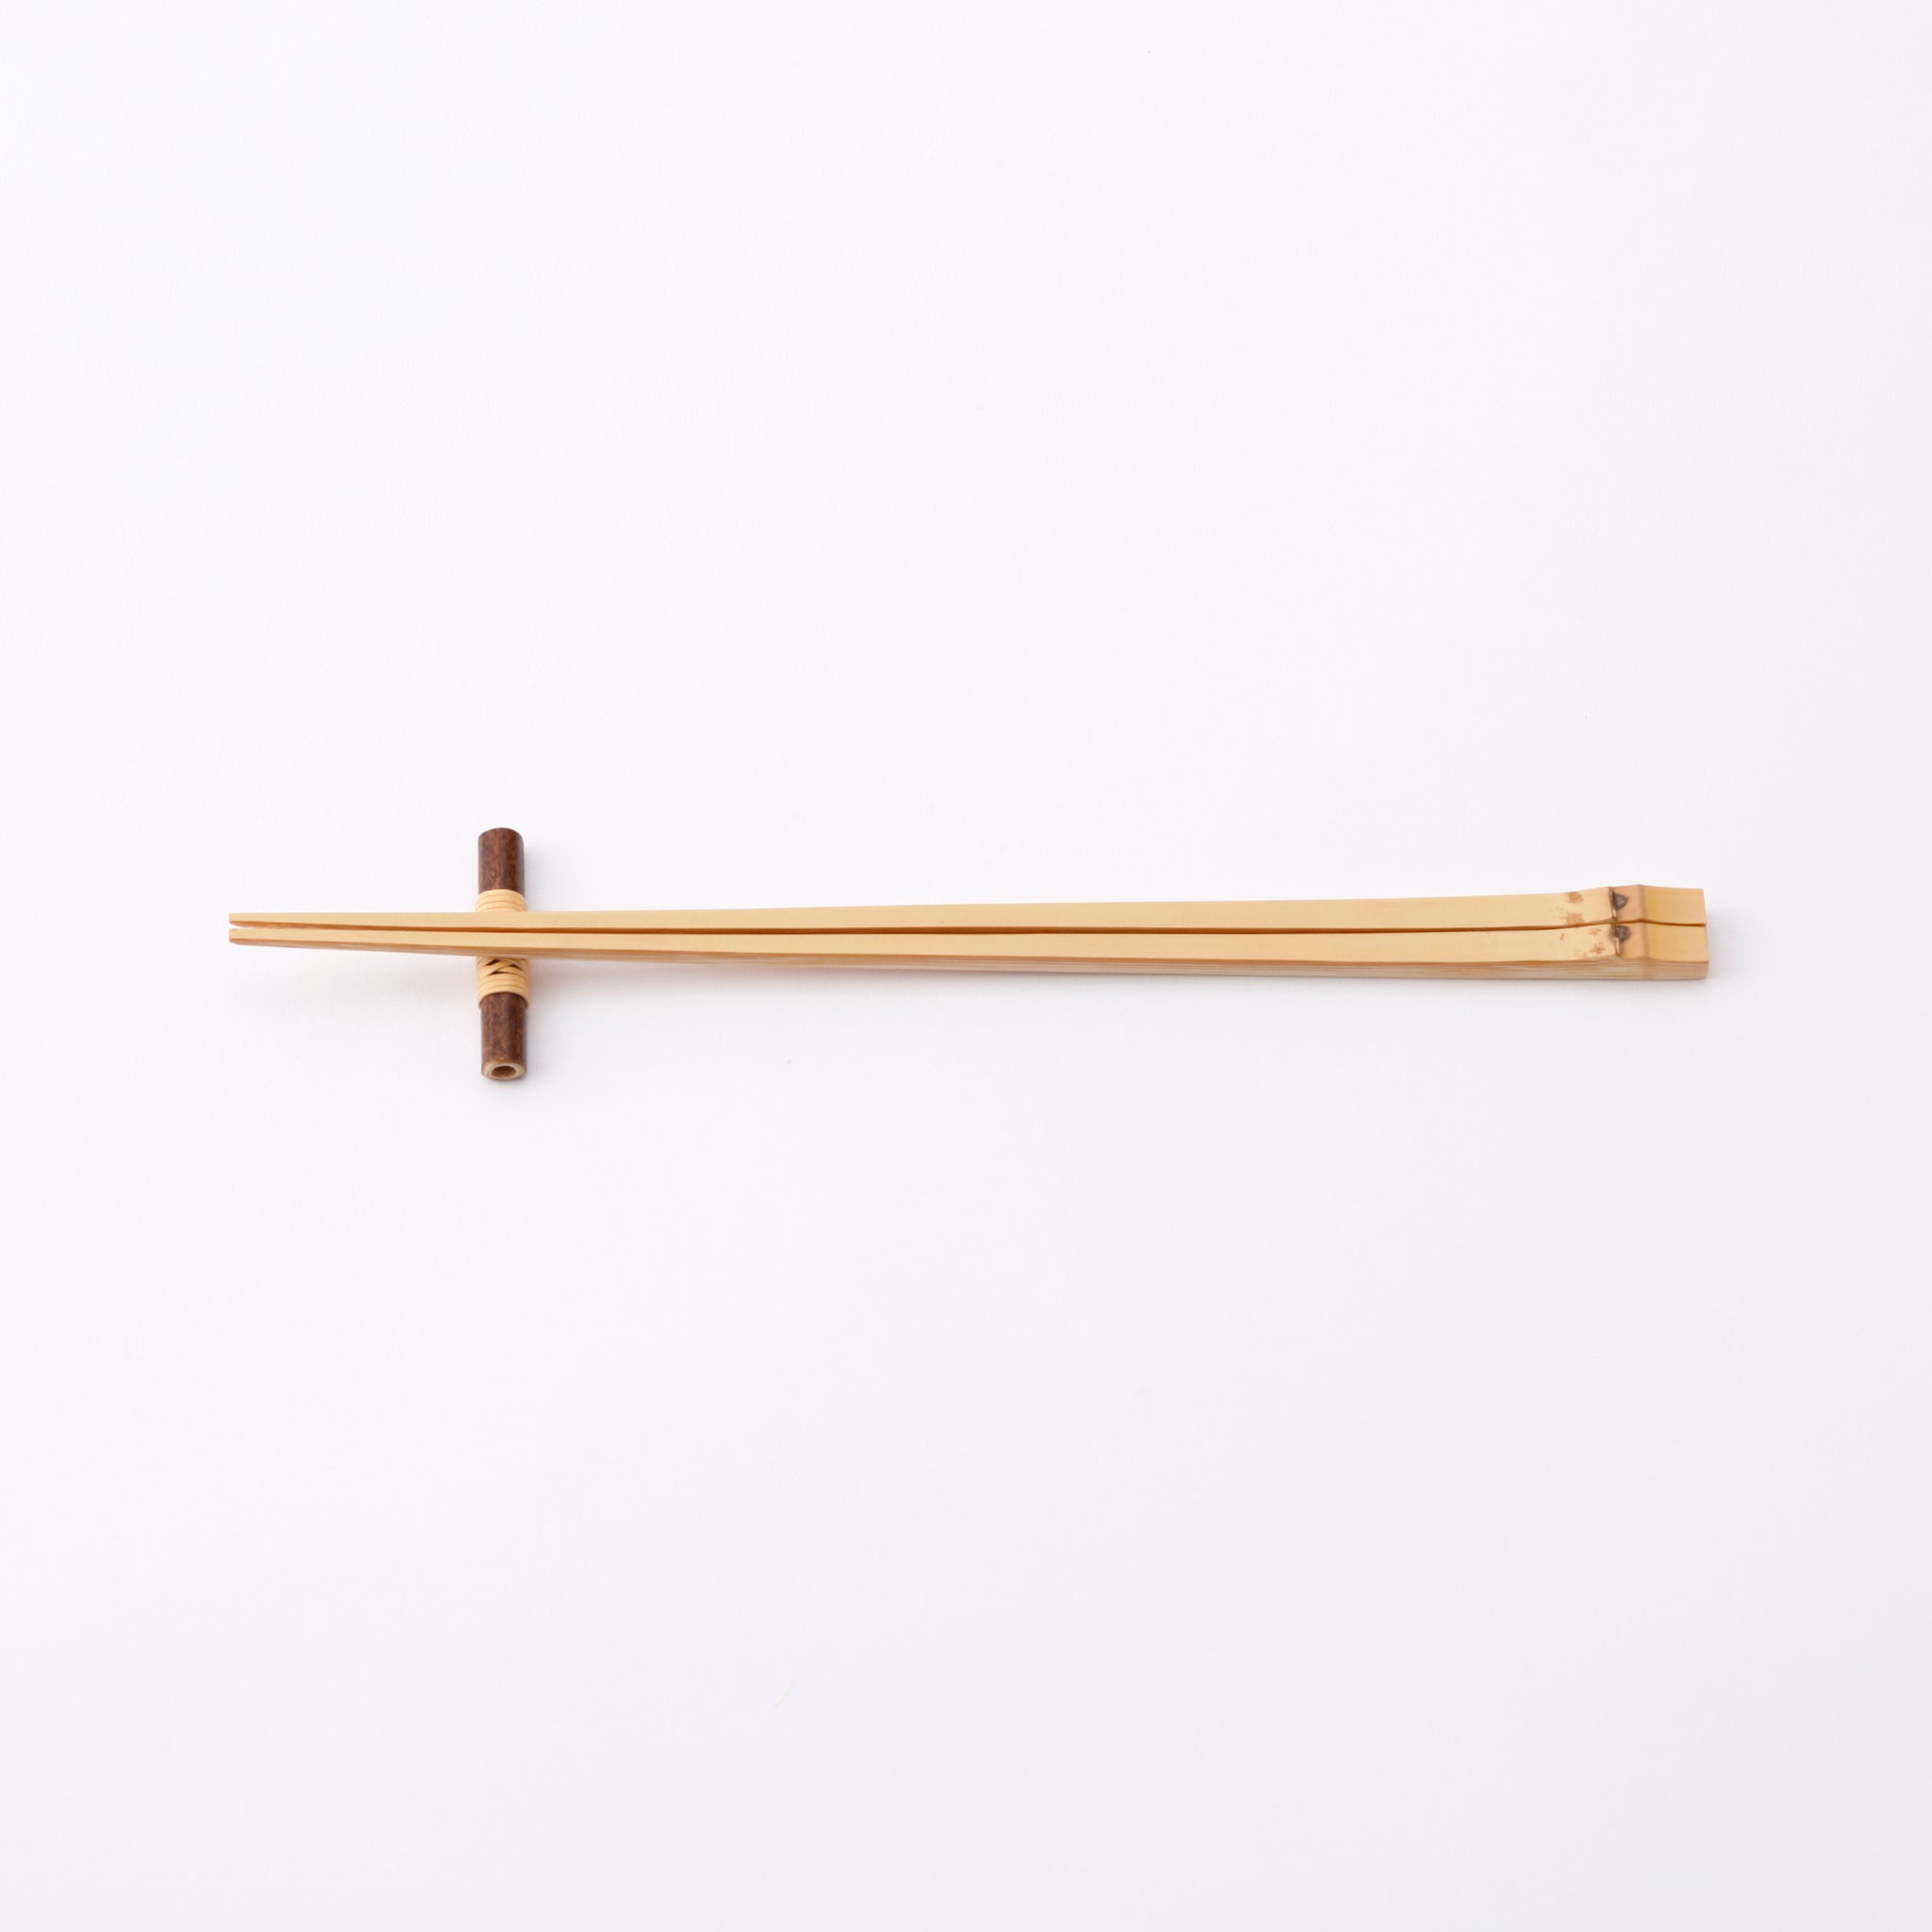 Bamboo Chopstick Rest (5 piece set)